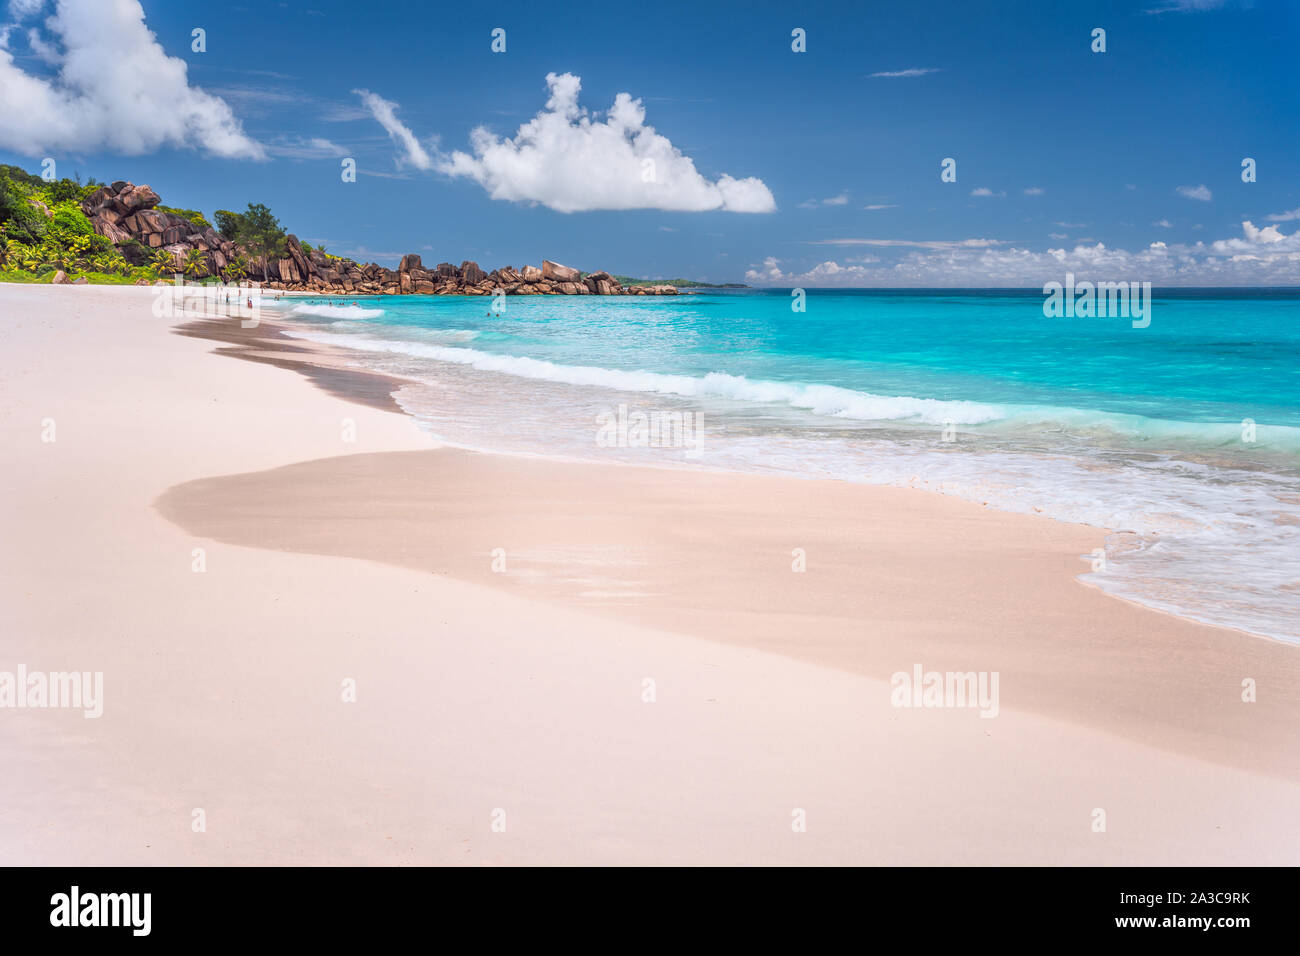 Grand Anse sabbiosa spiaggia esotica al La Digue Island alle Seychelles. I turisti non riconosciuta di nuoto e relax nella laguna blu in background Foto Stock